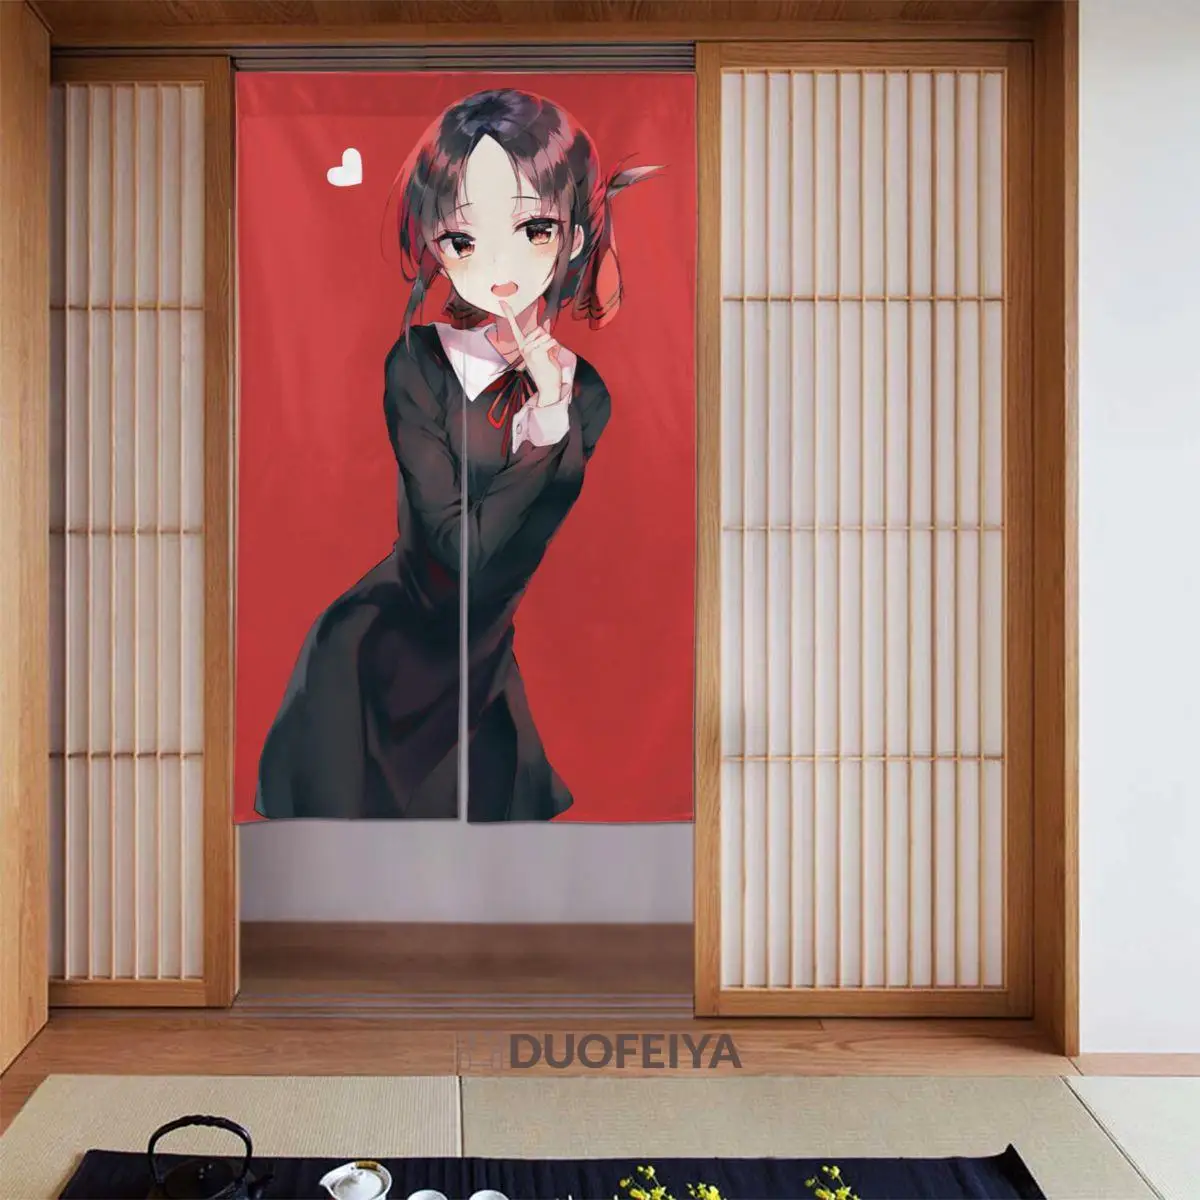 

Японская дверная занавеска Kaguya-sama: Love Is War, занавеска из хлопка и льна с аниме-перегородкой, подвесная занавеска для двери, хум-орнамент